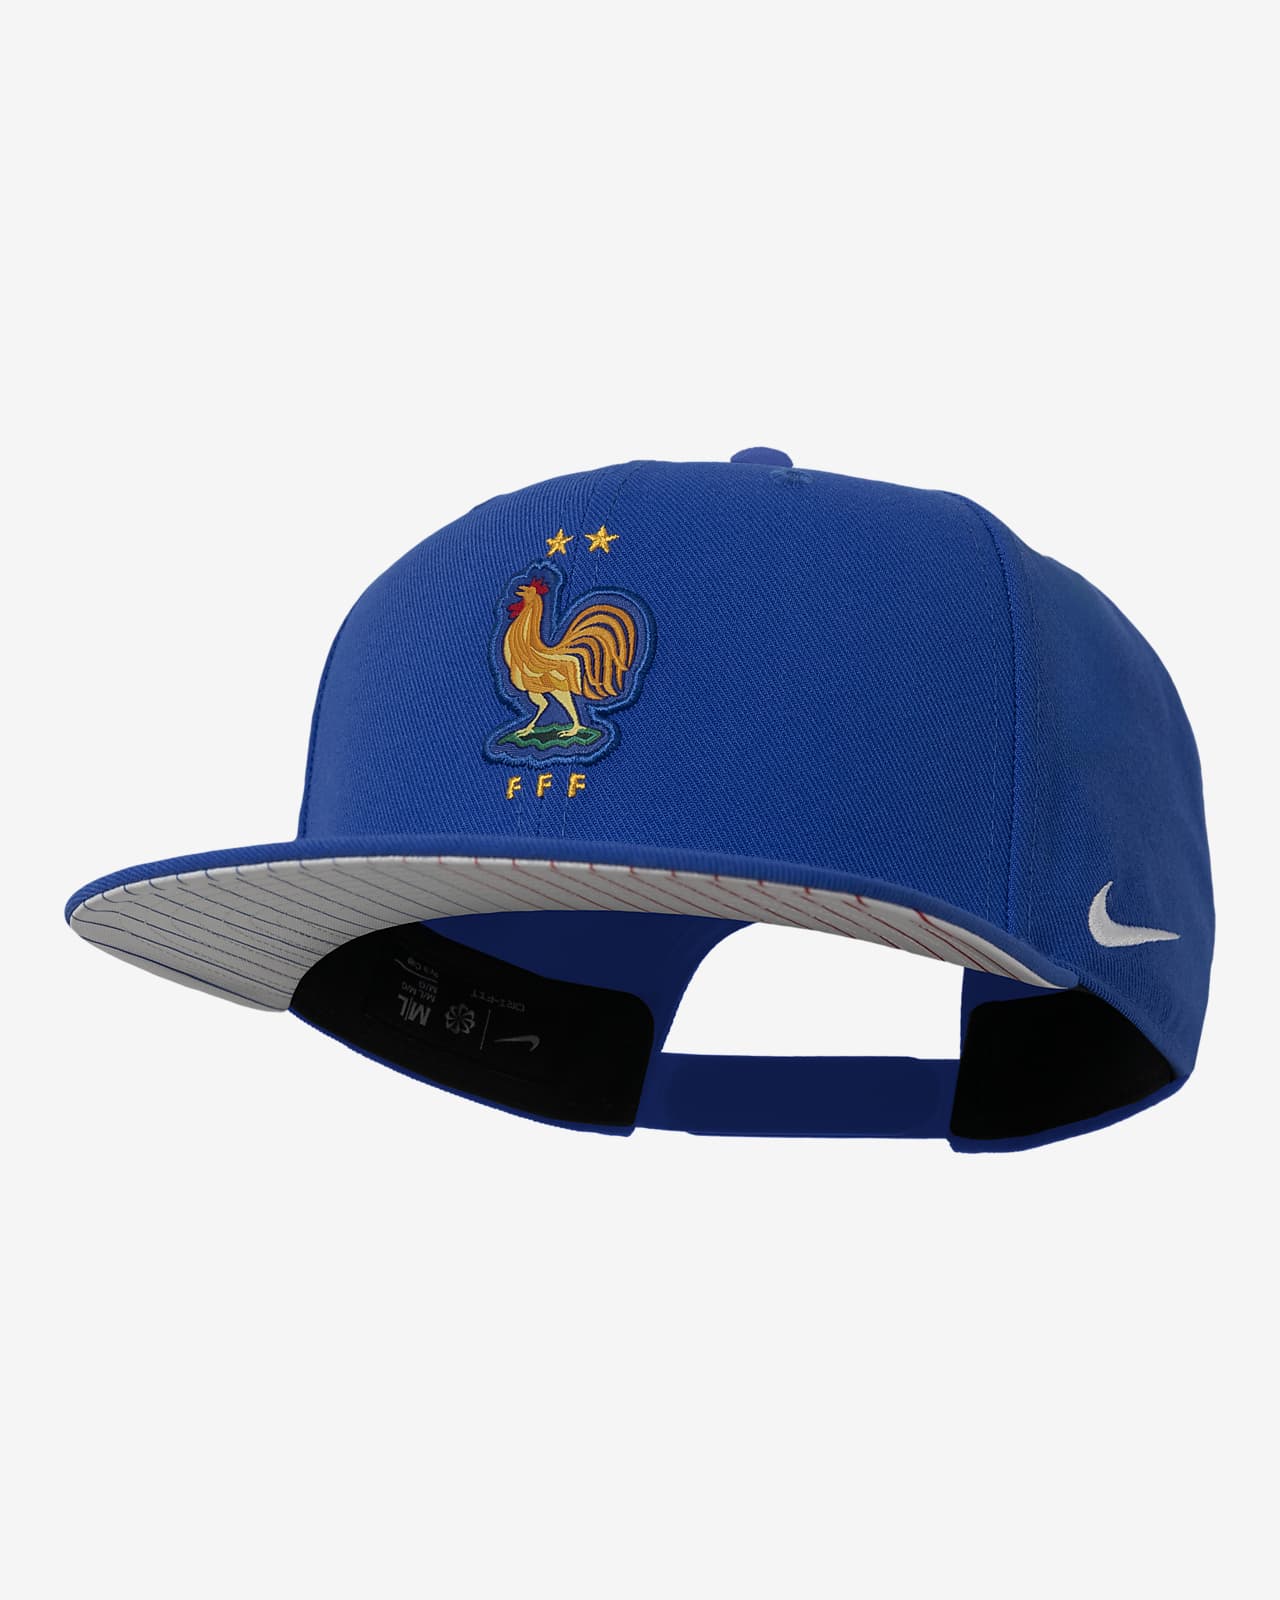 FFF Pro Nike Soccer Cap